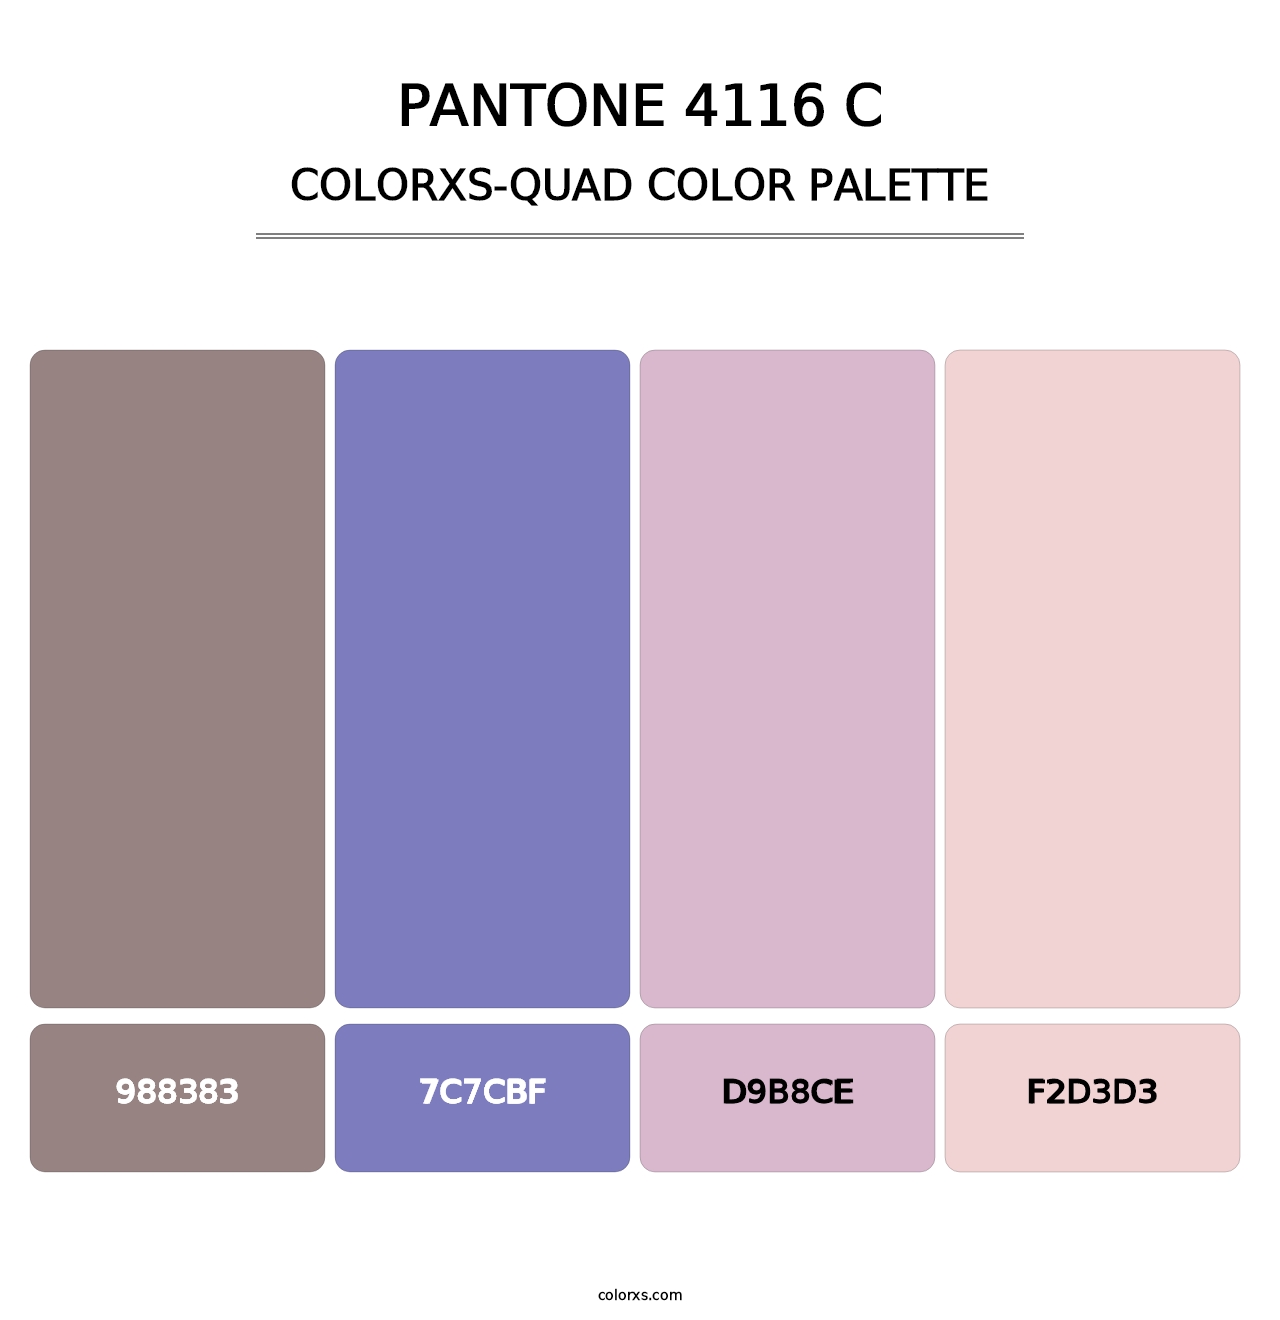 PANTONE 4116 C - Colorxs Quad Palette